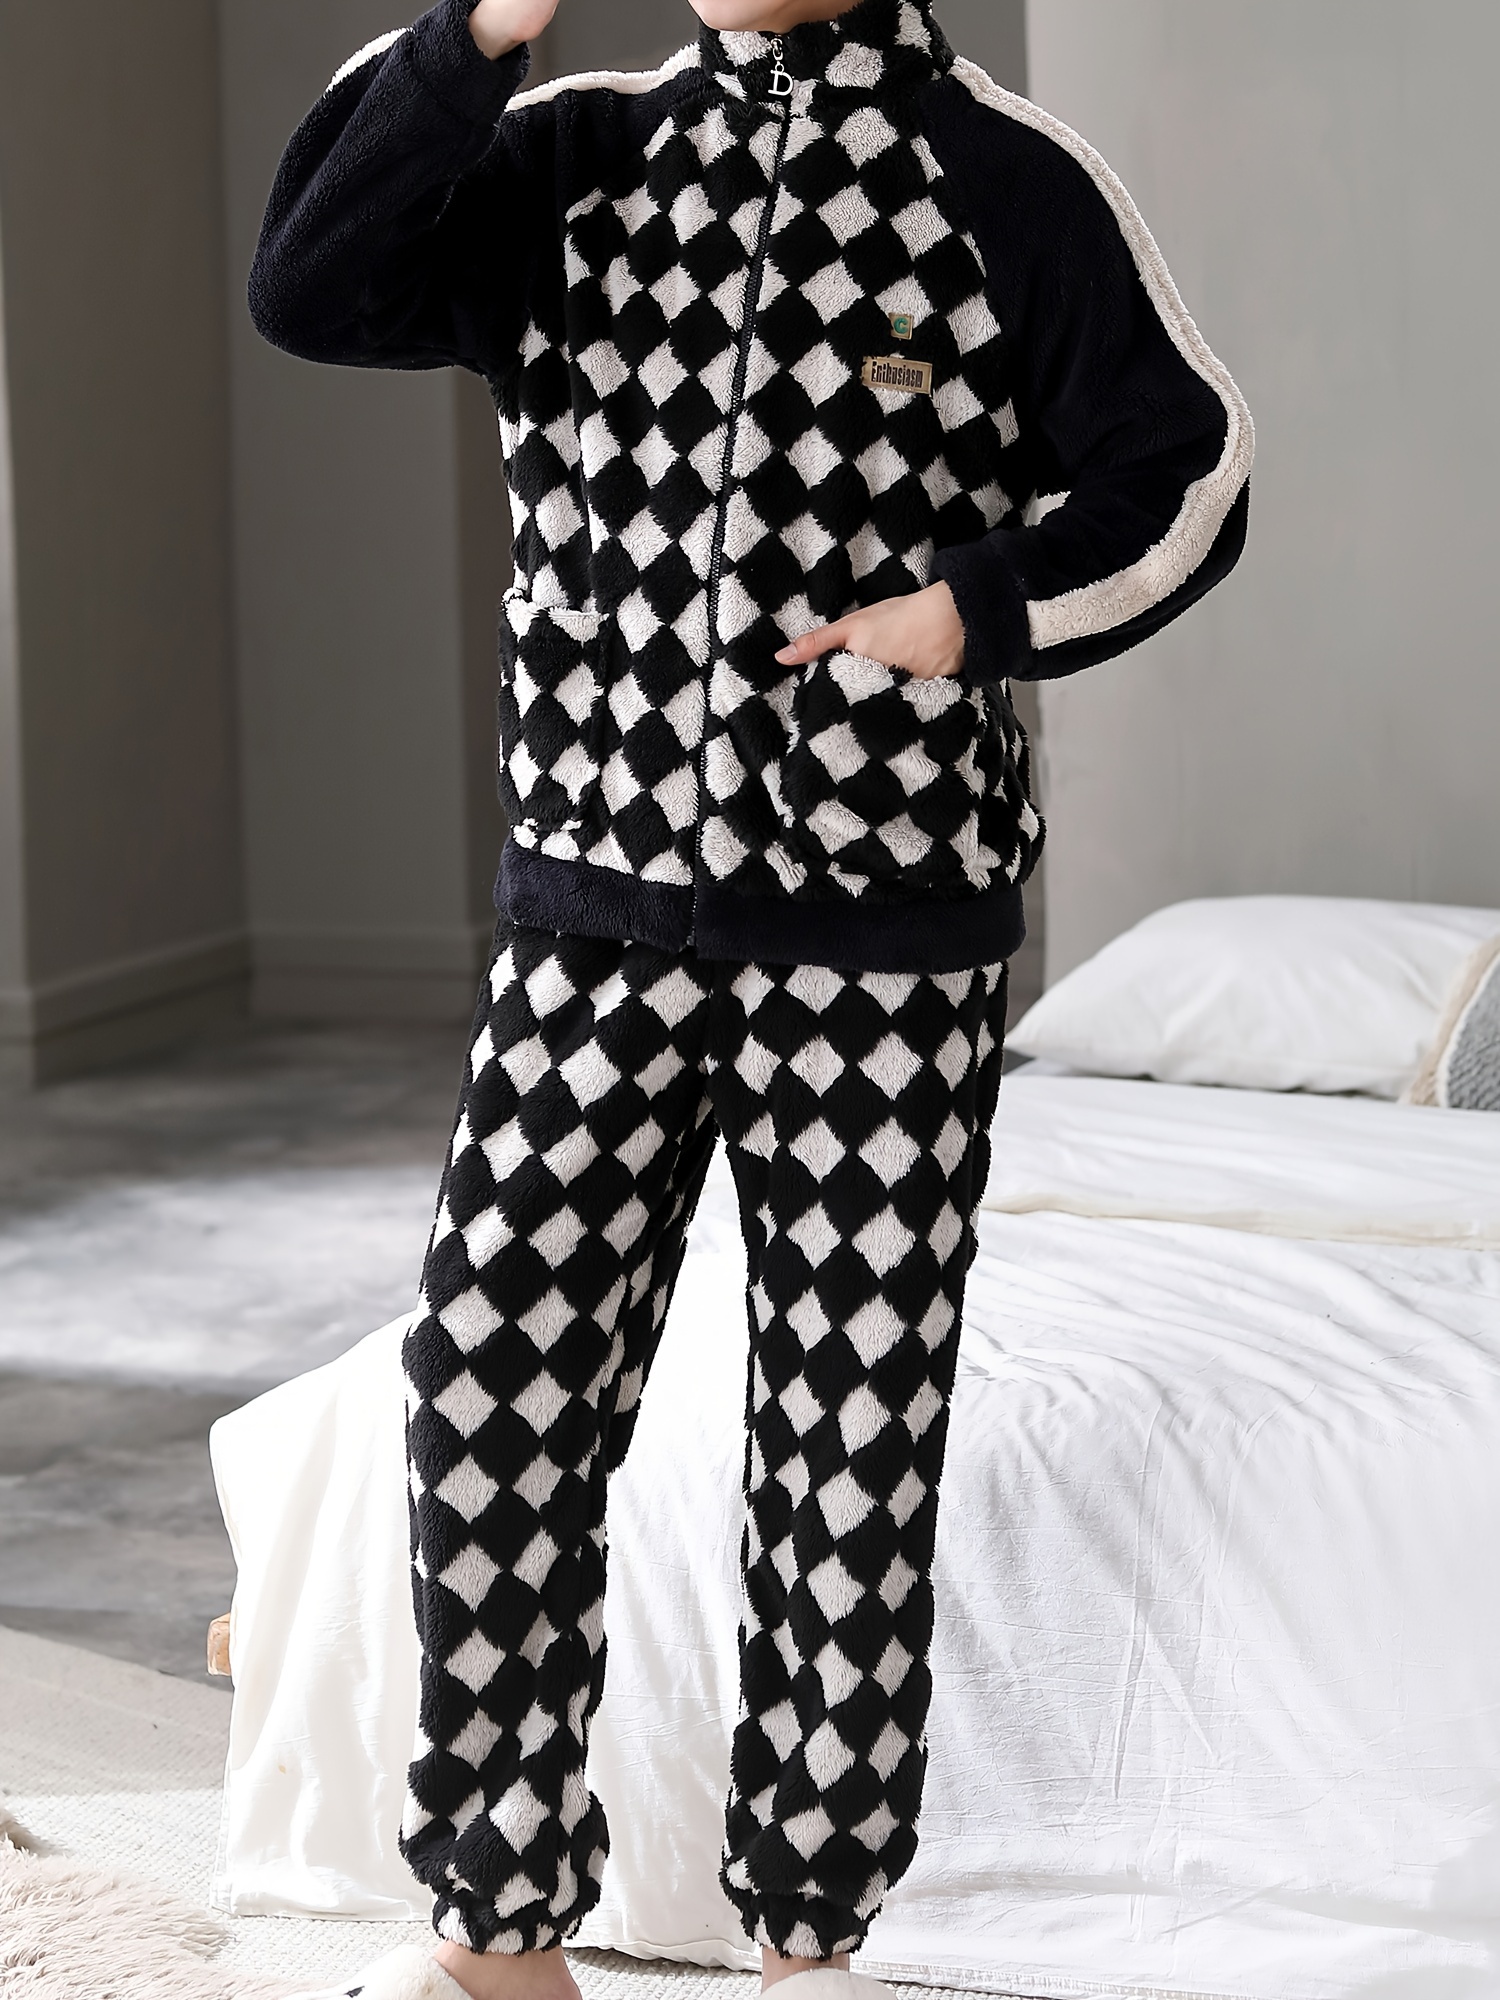 Fleece Onesies For Women - Hoodie Footie Pajamas Adult, Zip Front